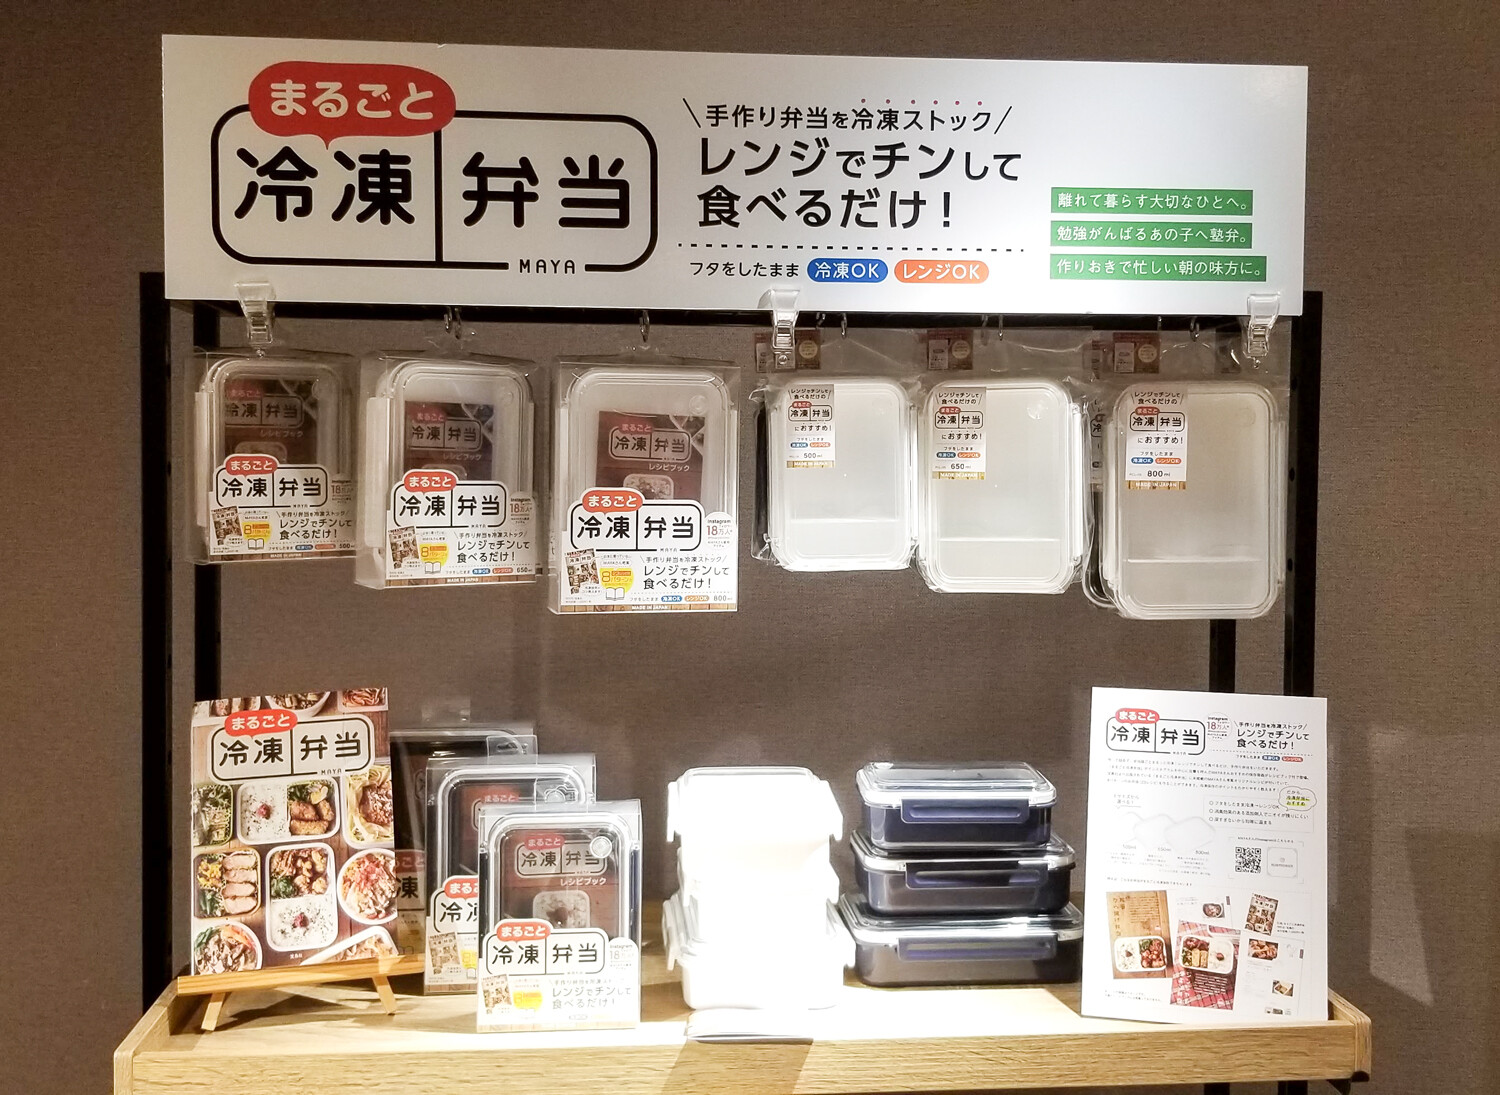 まるごと冷凍弁当 レシピ付 タイトボックス 仕切付 Pcl 1s 日本製 の商品ページ 卸 仕入れサイト スーパーデリバリー